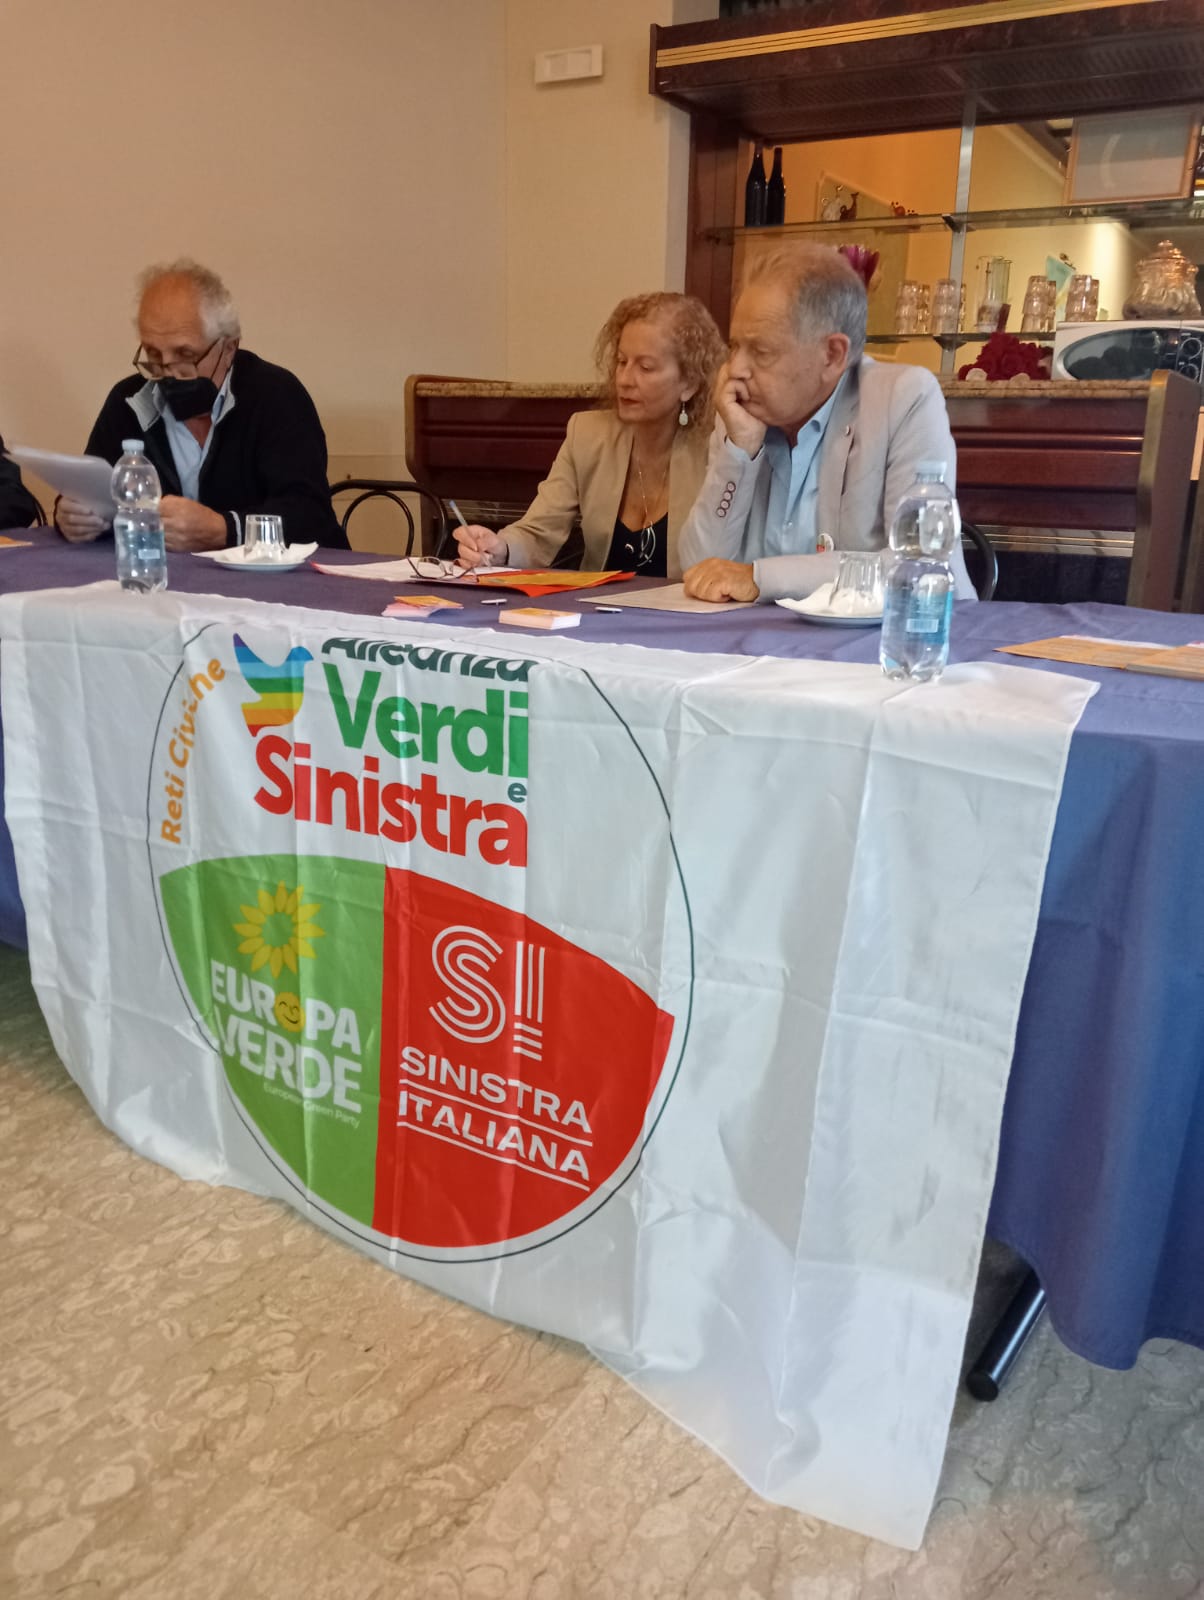 Salerno: Europa Verde, Alleanza Verdi-Sinistra festeggia Franco Mari “Saprà portare temi dei Verdi in Parlamento”